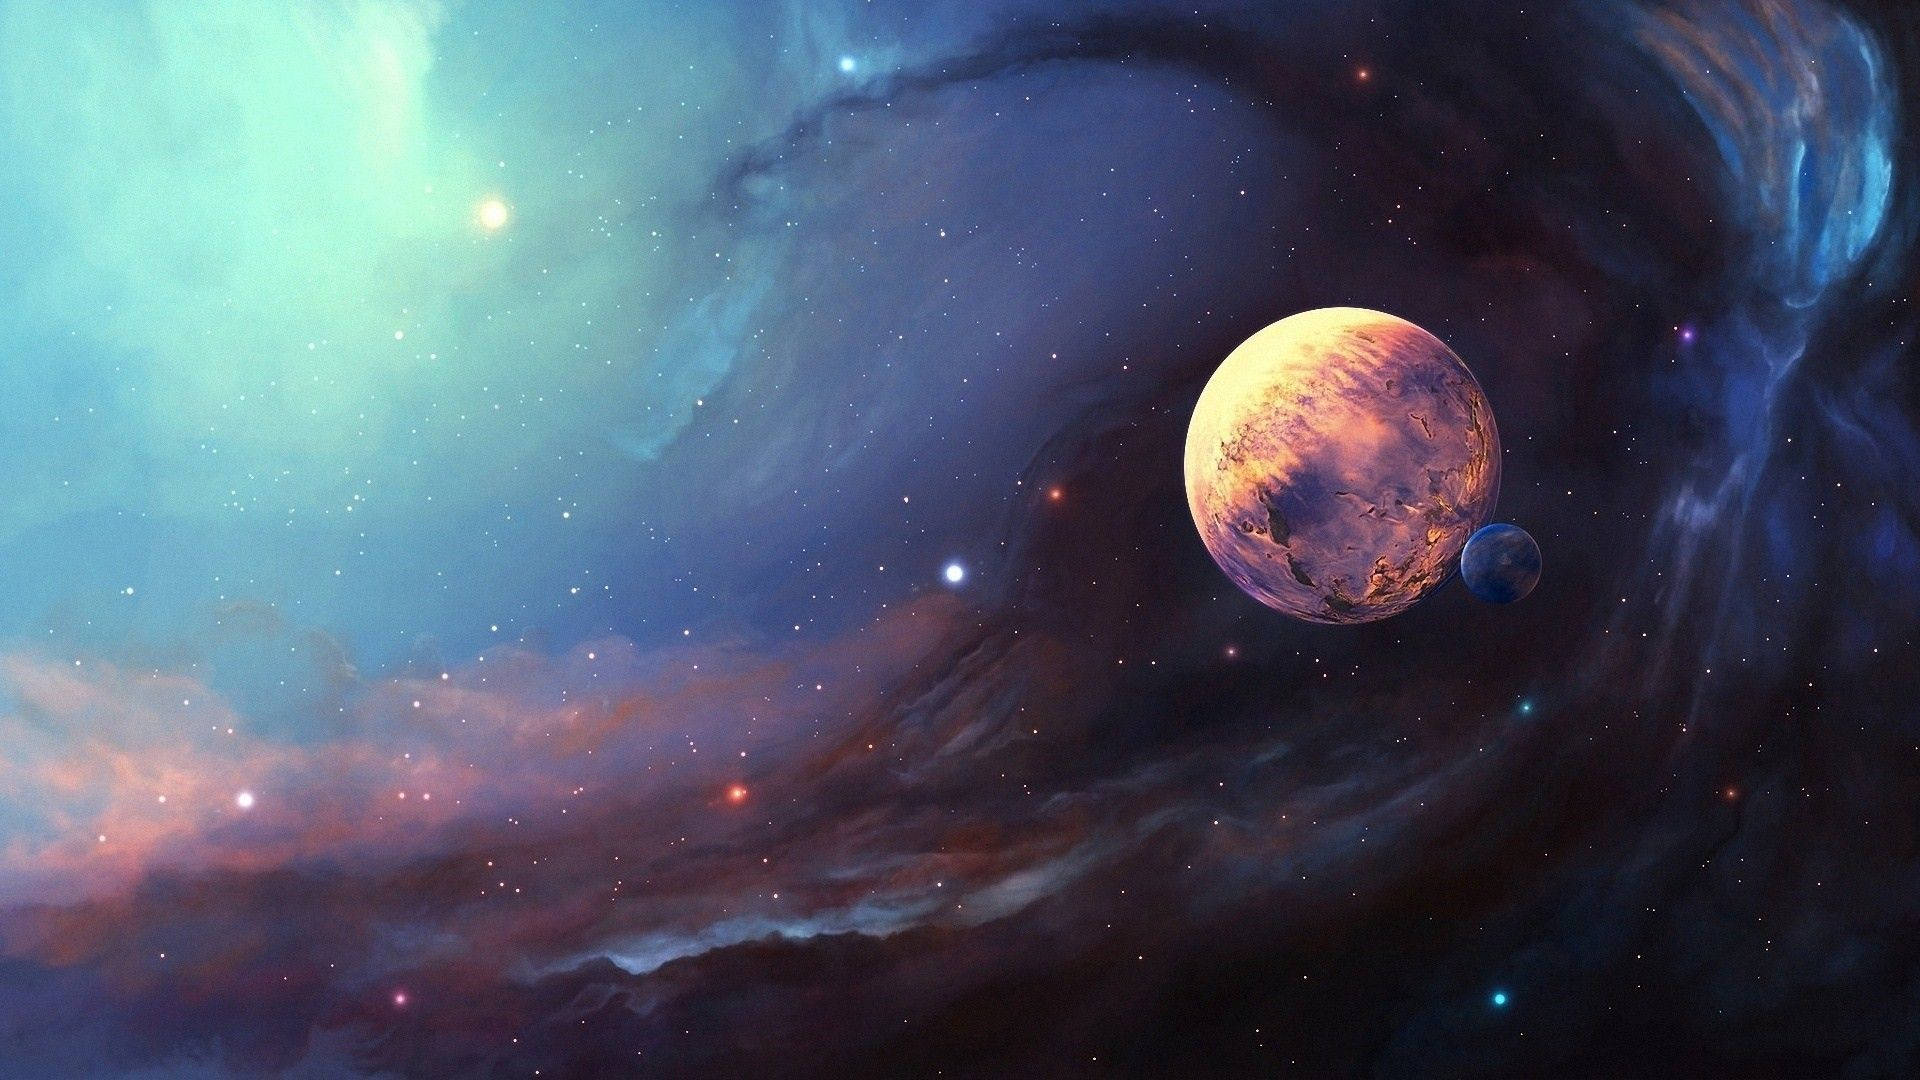 Cosmic Jupiter Digital Art Wallpaper